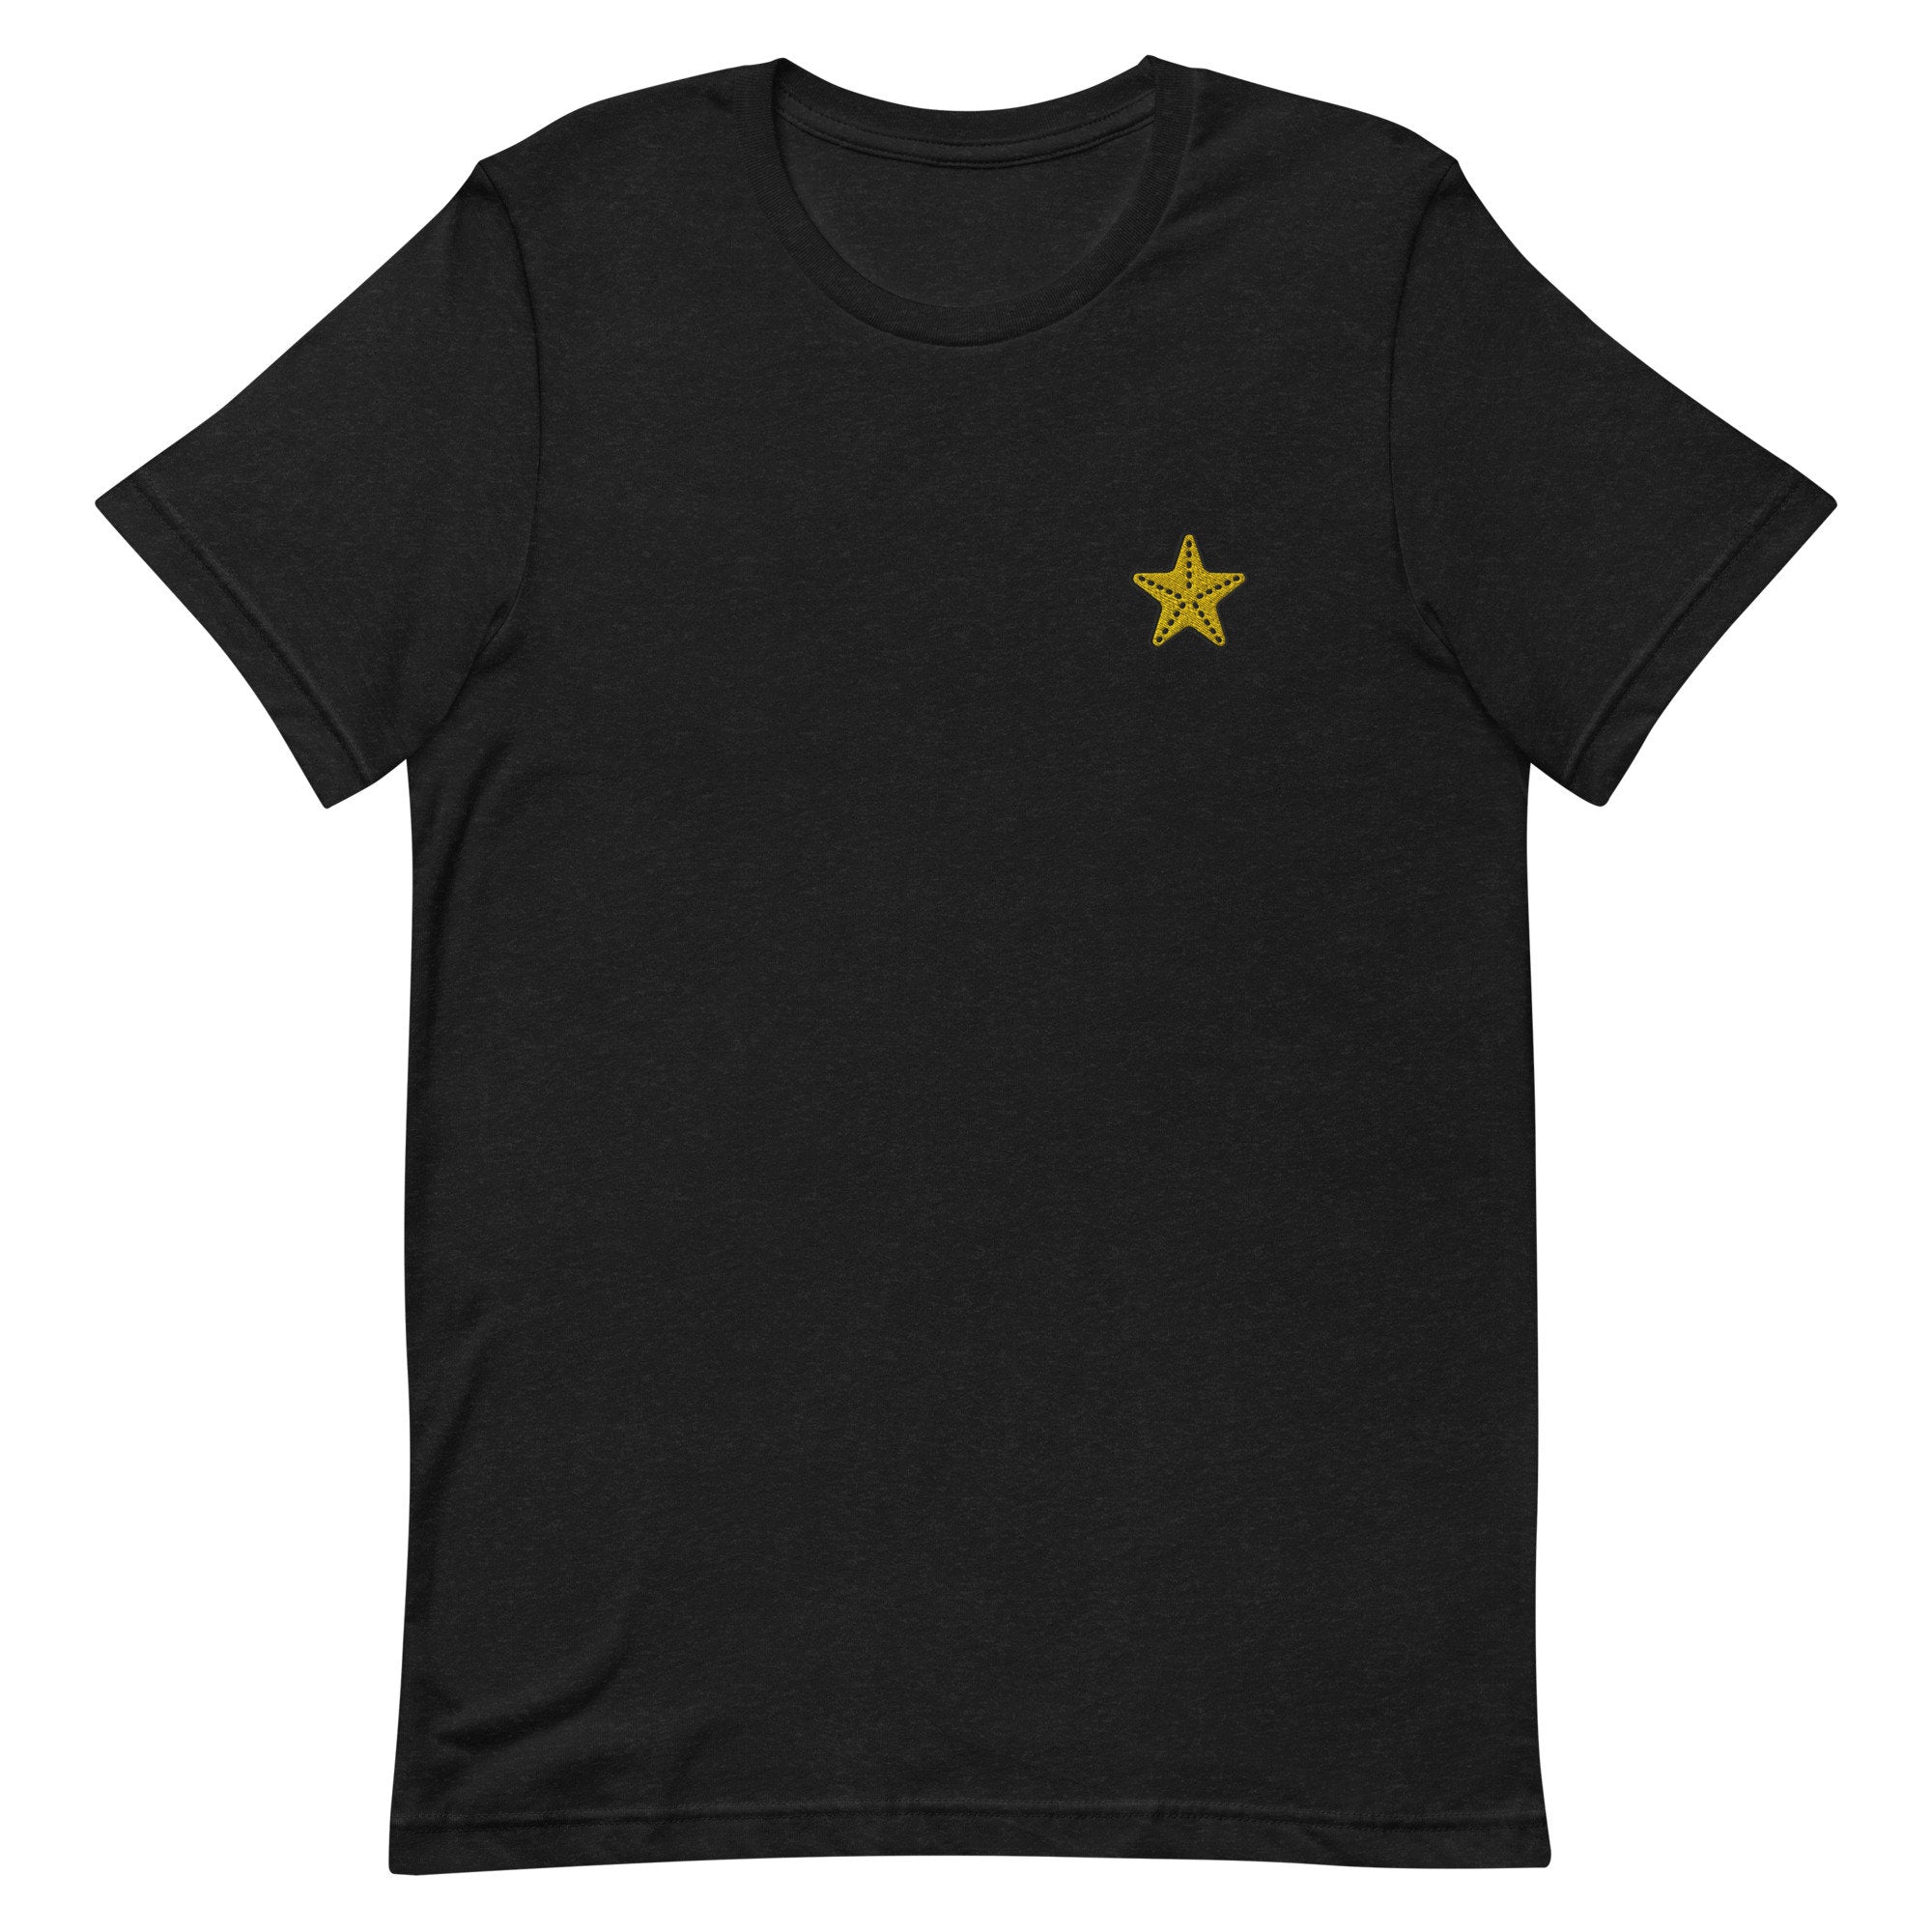 Starfish Premium Men's T-Shirt, Embroidered Men's T-Shirt Gift for Boyfriend, Men's Short Sleeve Shirt - Multiple Colors